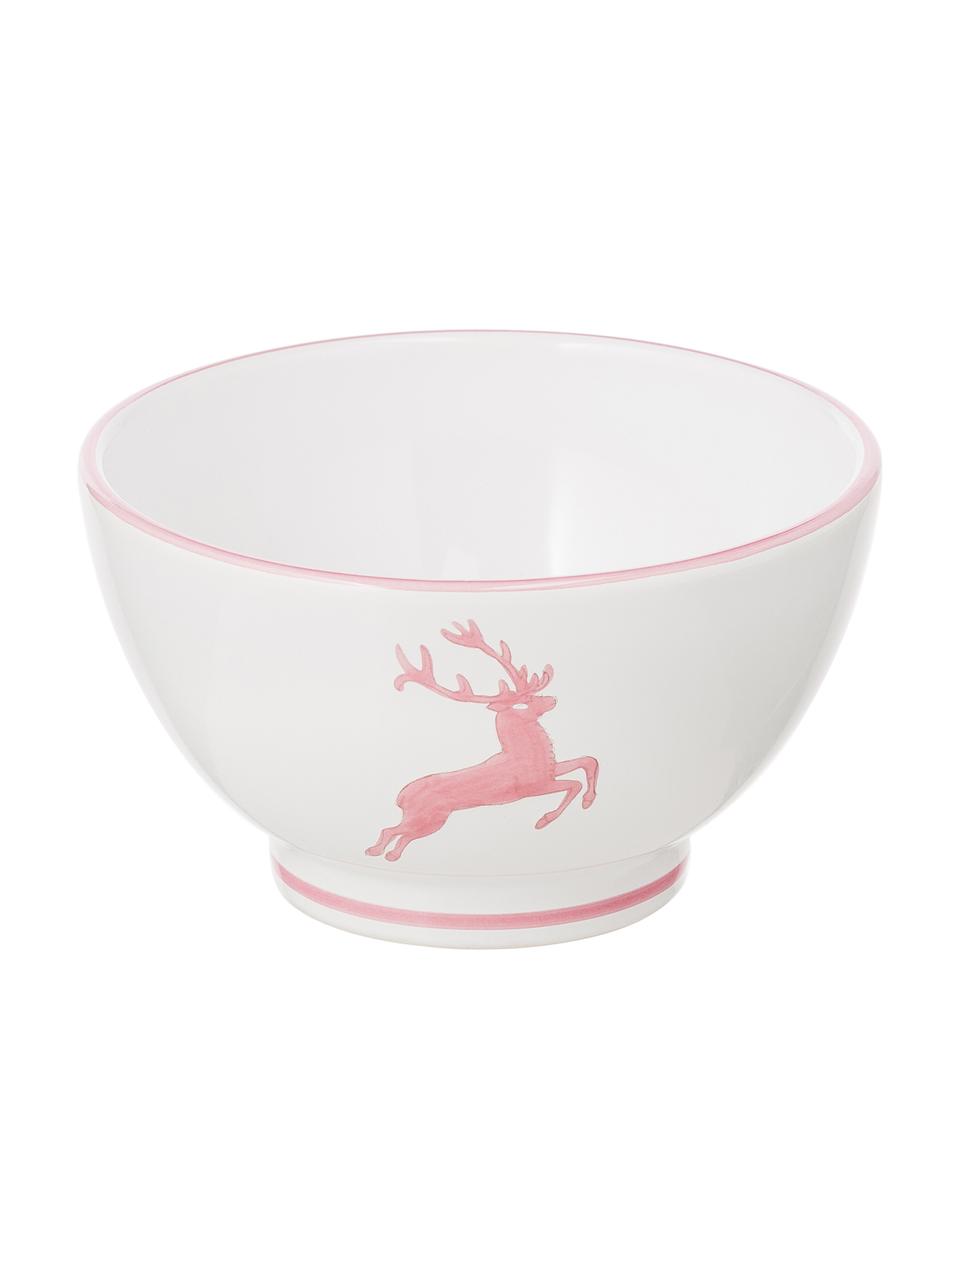 Ontbijtset Rosa Gourmet Deer, 4-delig, Keramiek, Roze, wit, Set met verschillende formaten